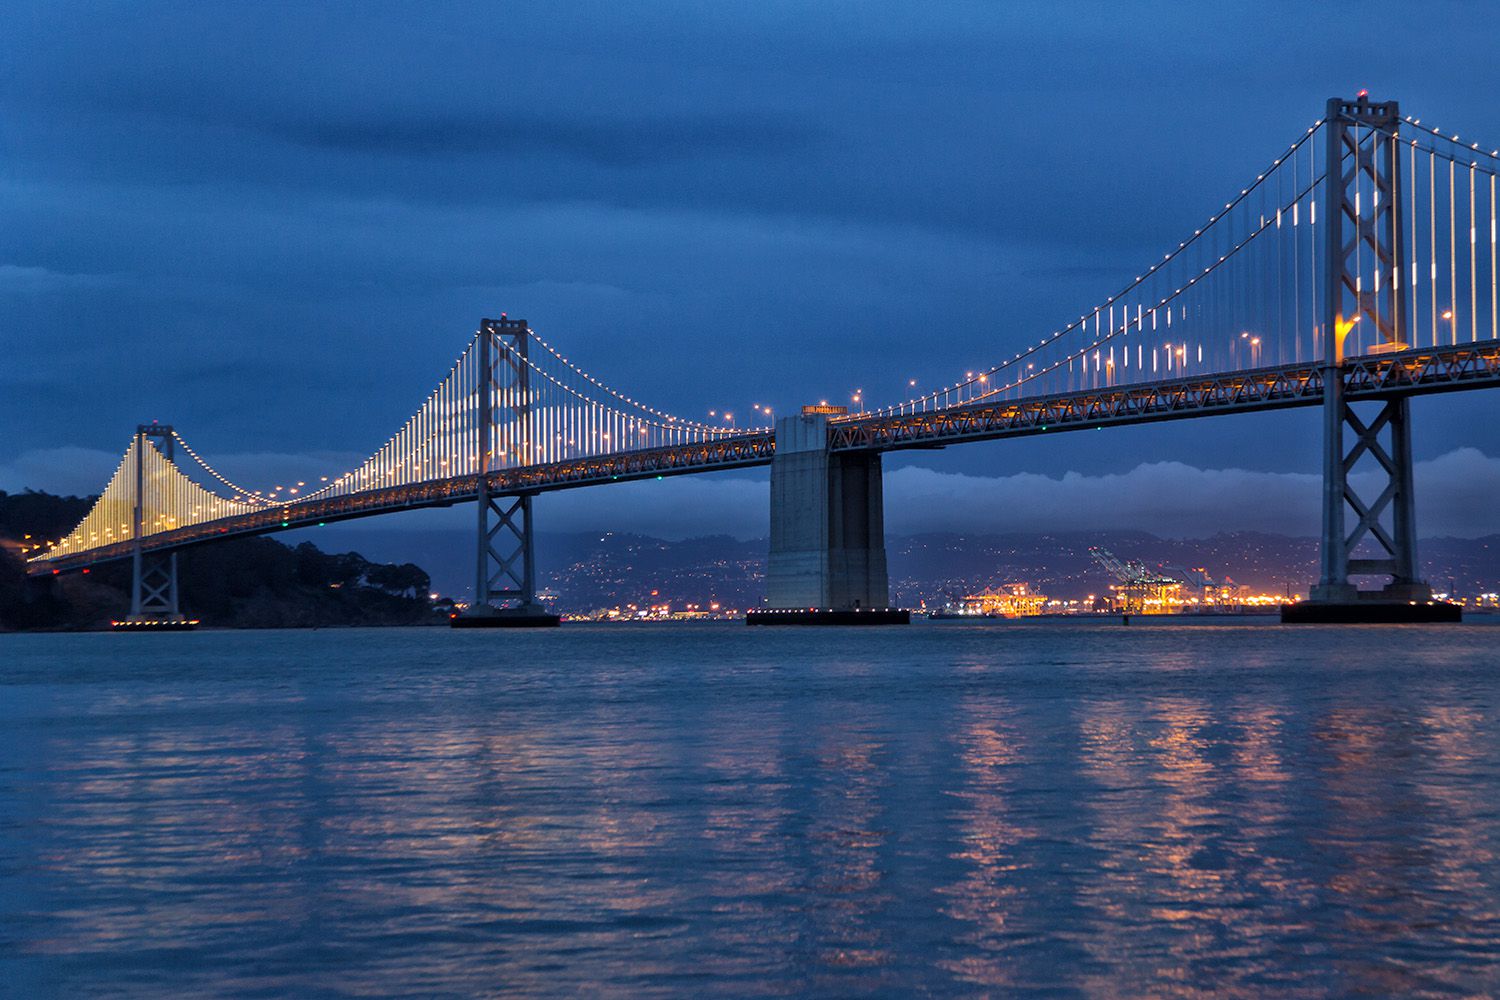 Bay Lights and the San Francisco Bay Bridge